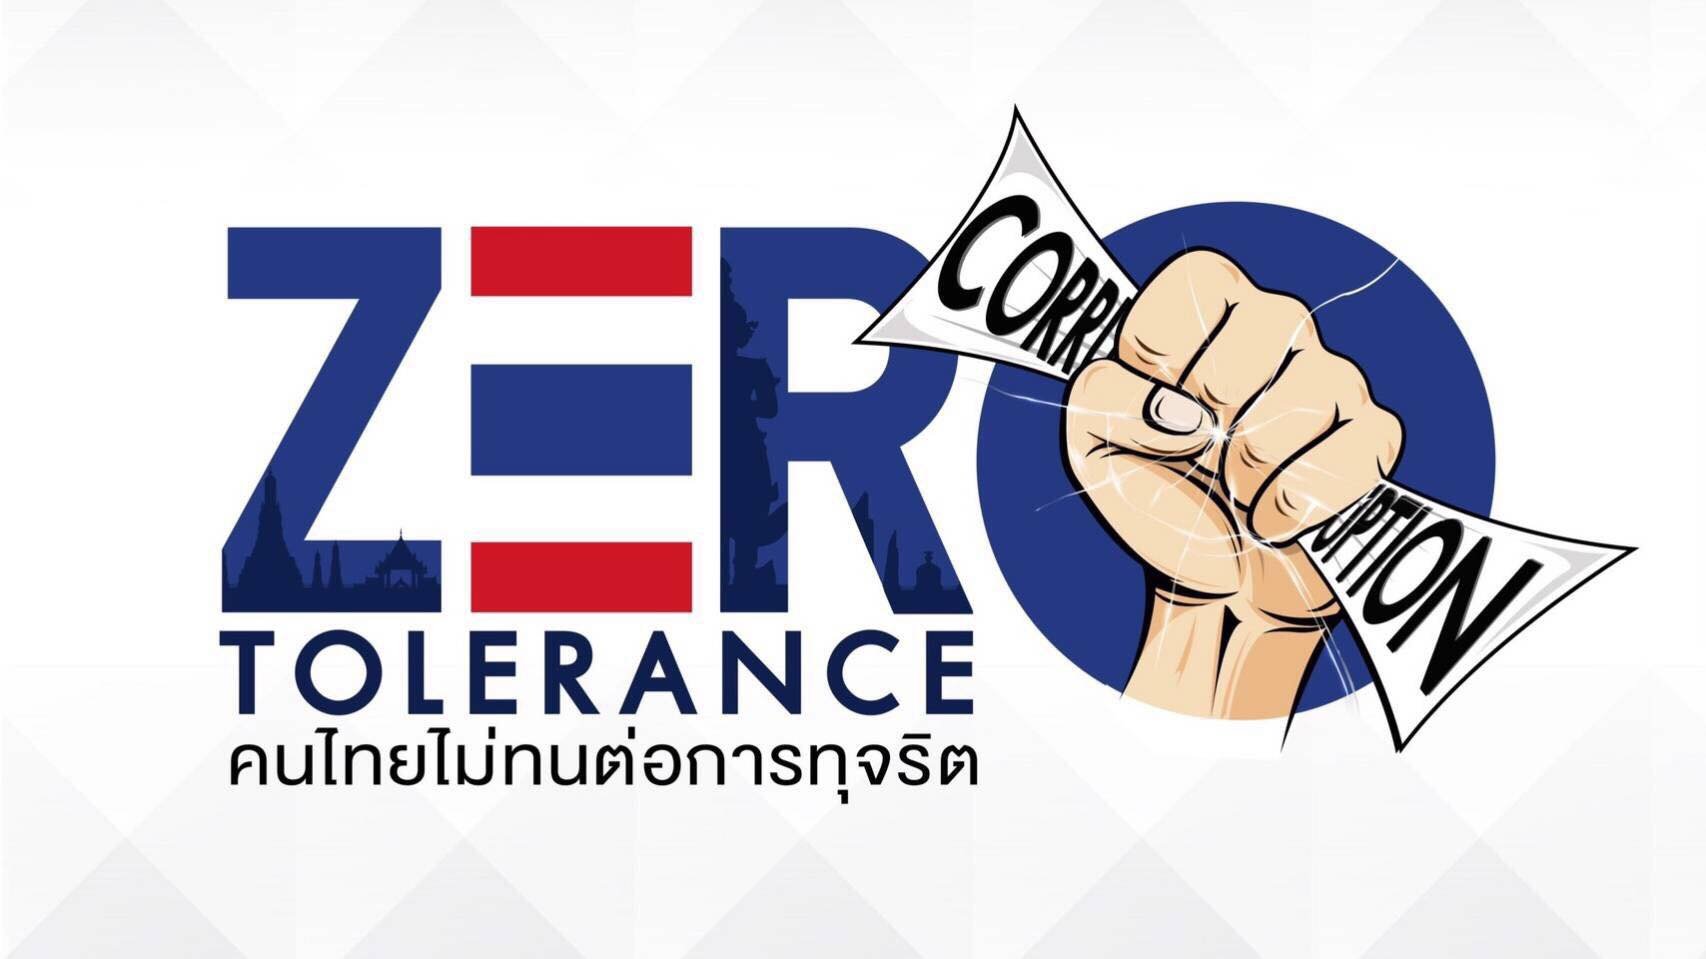 รายการ “คนไทยไม่ทนต่อการทุจริต” วันเสาร์ที่ 7 เมษายน 2561 เวลา 18.30-1900 น.